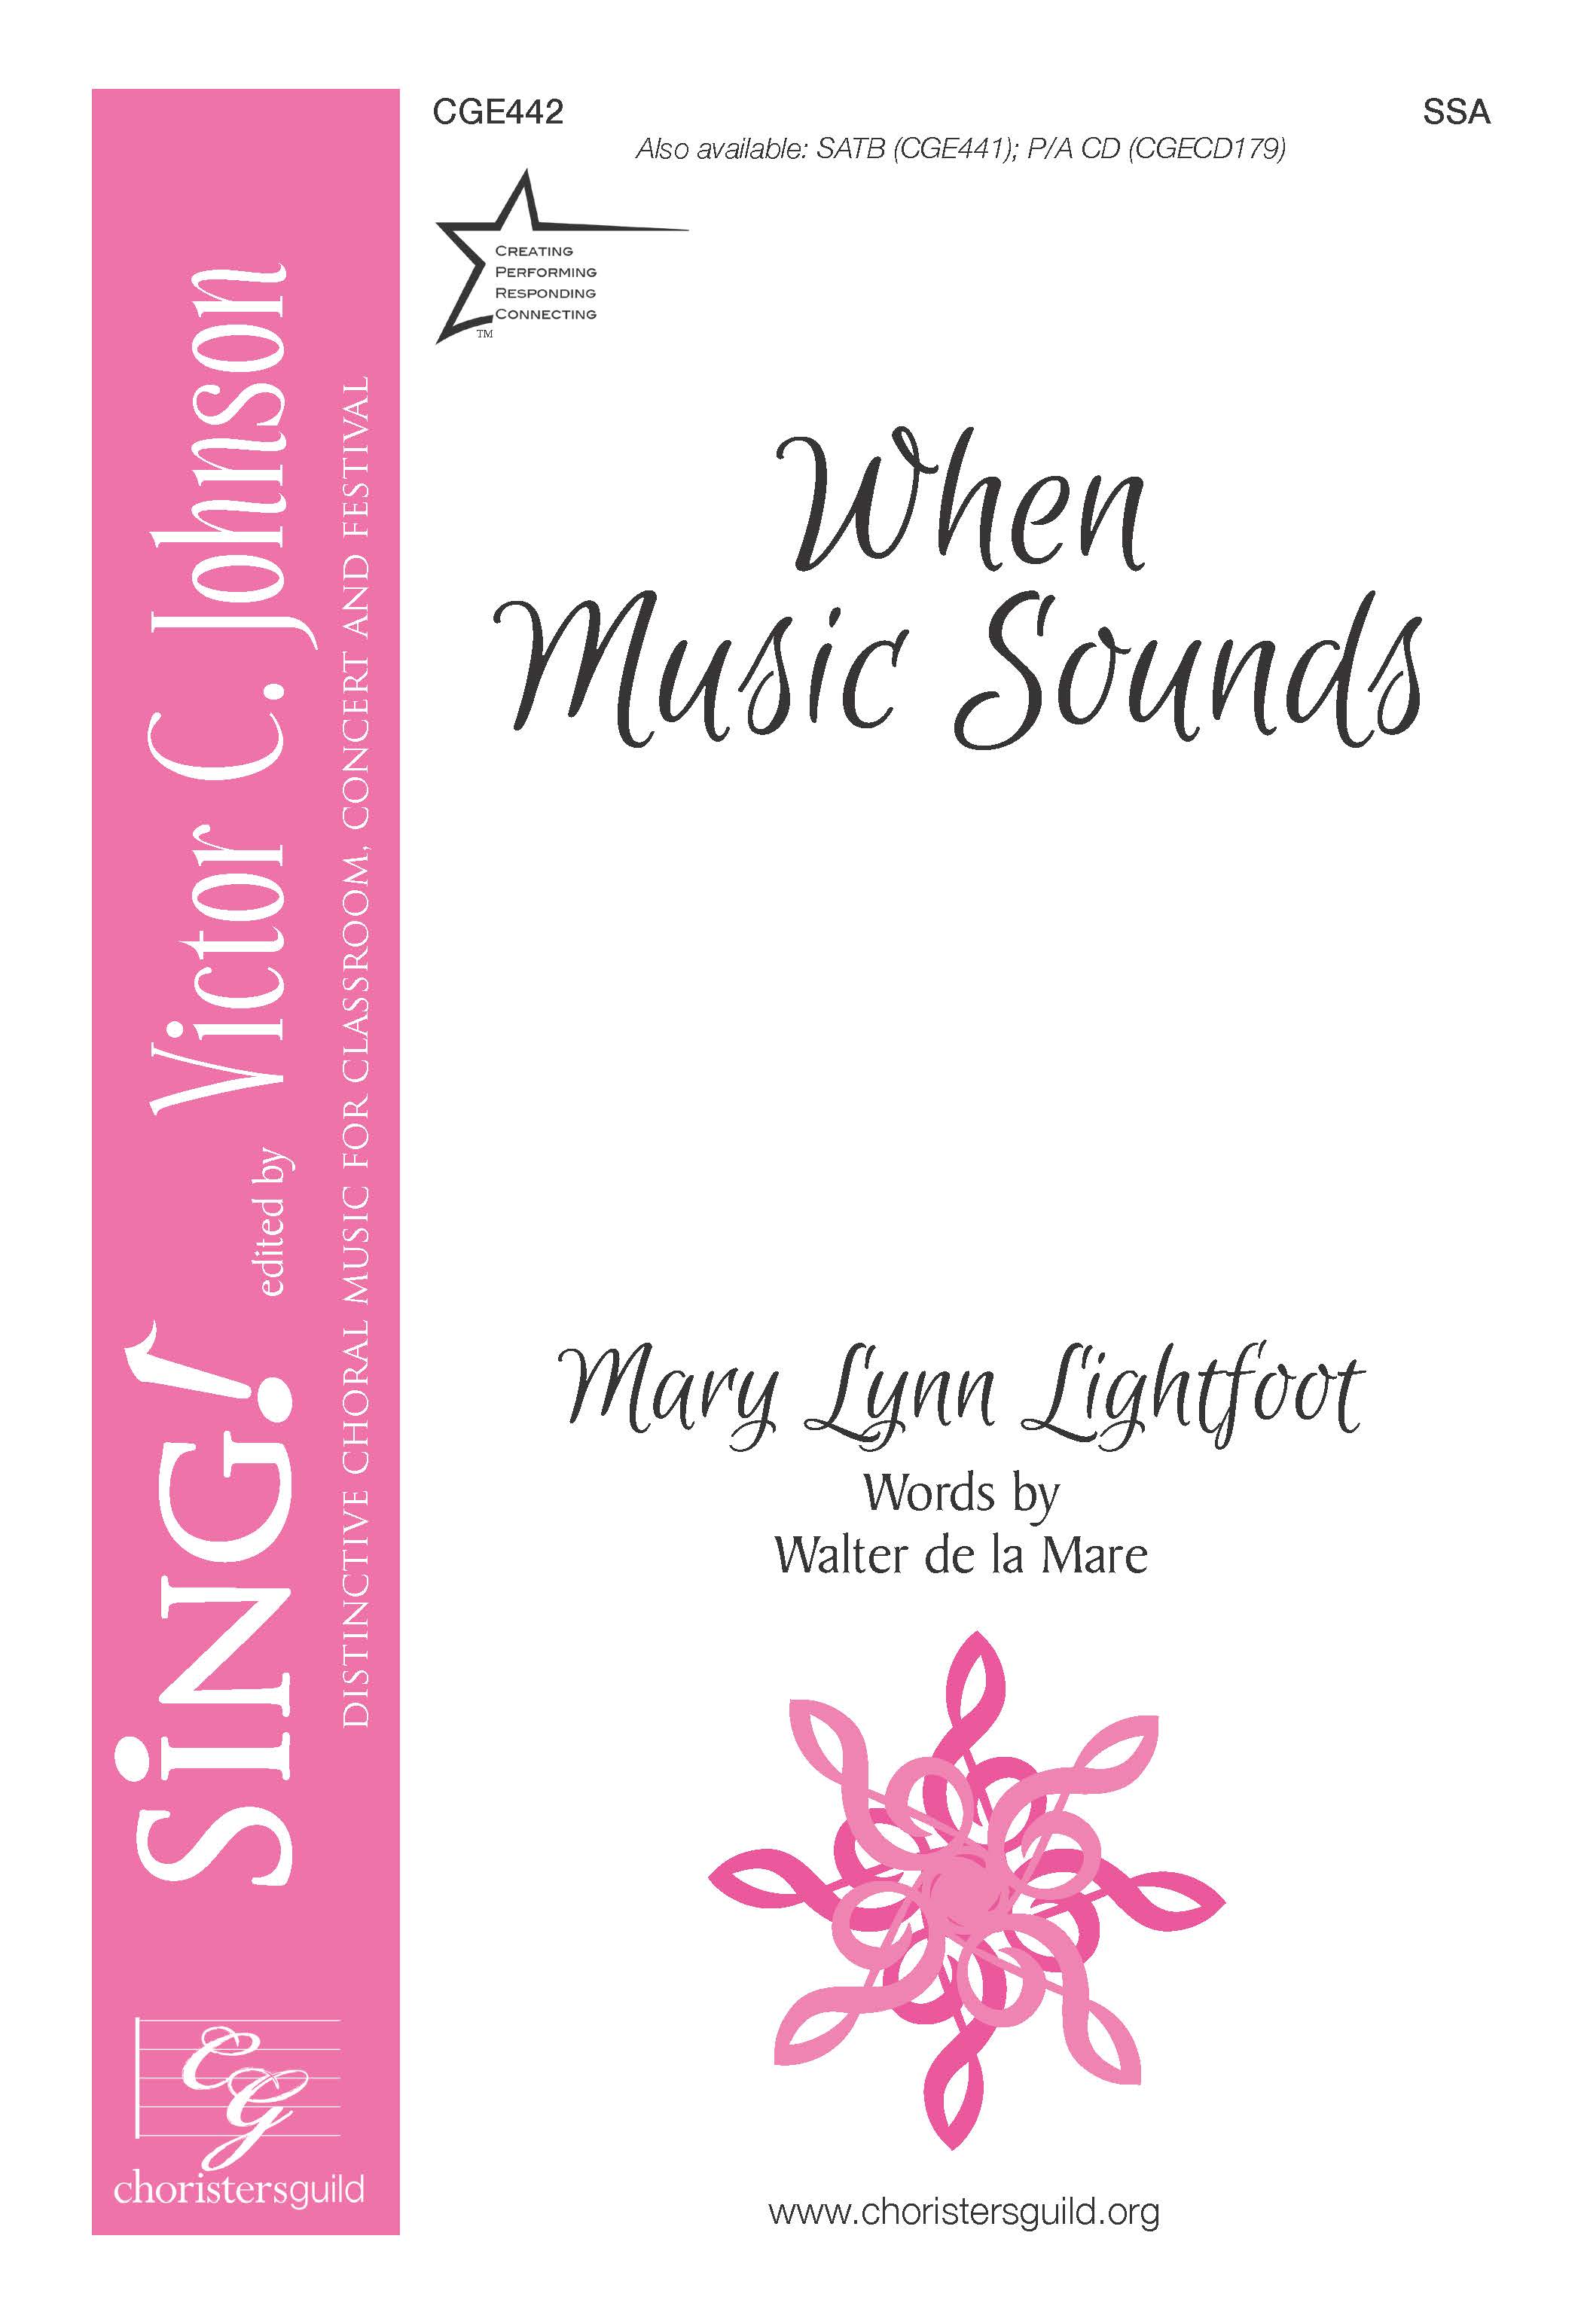 When Music Sounds - SSA